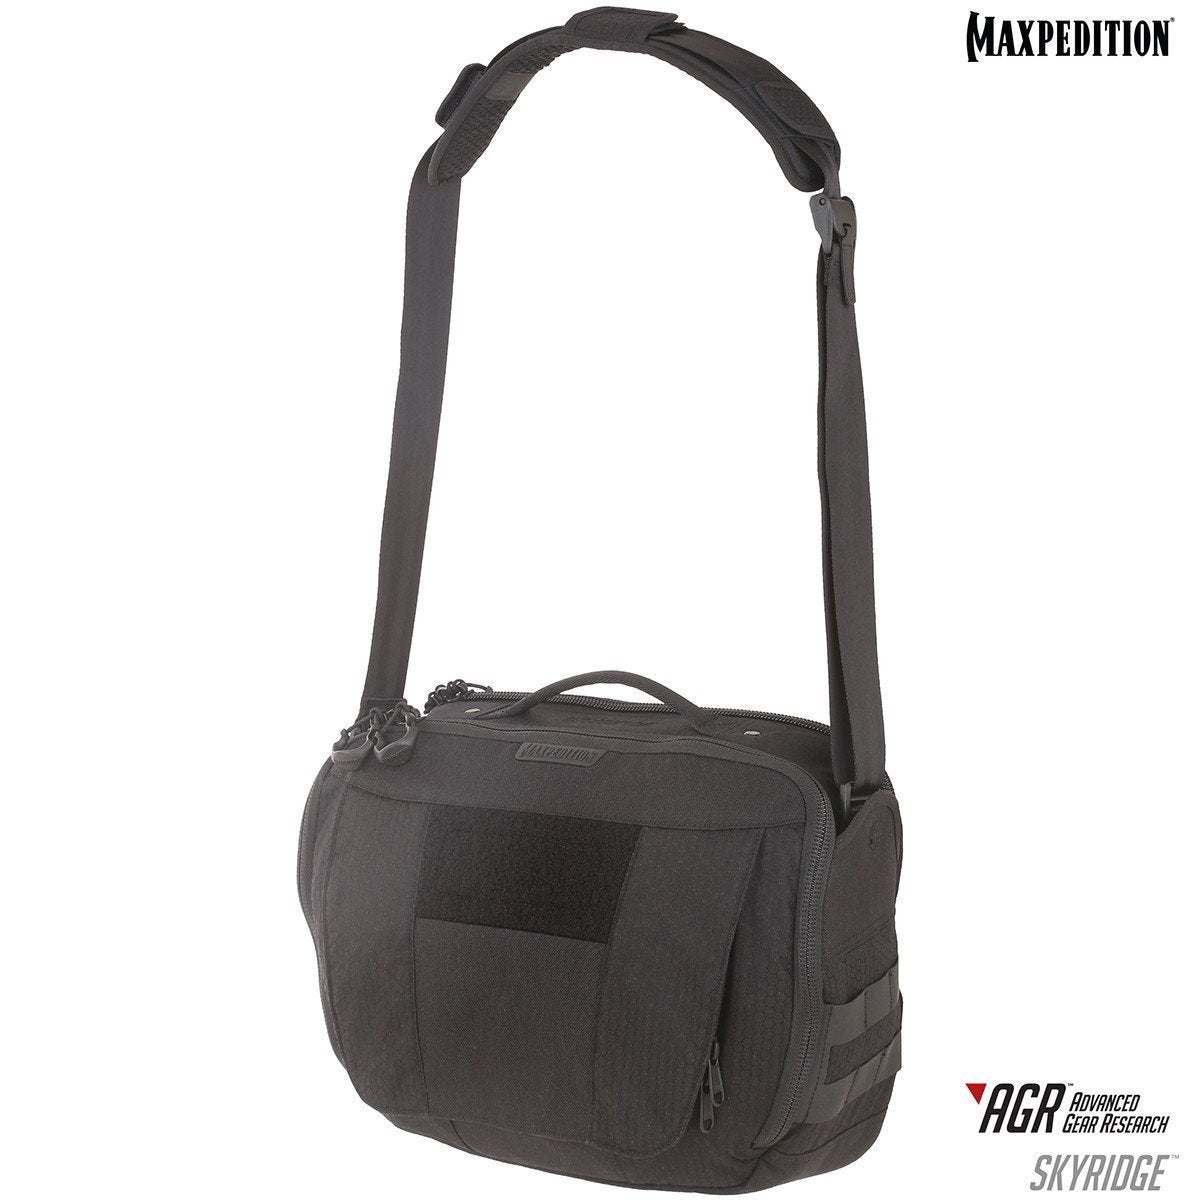 Maxpedition Skyridge Tech Messenger Bag 12.5L Black Tactical Distributors Ltd New Zealand